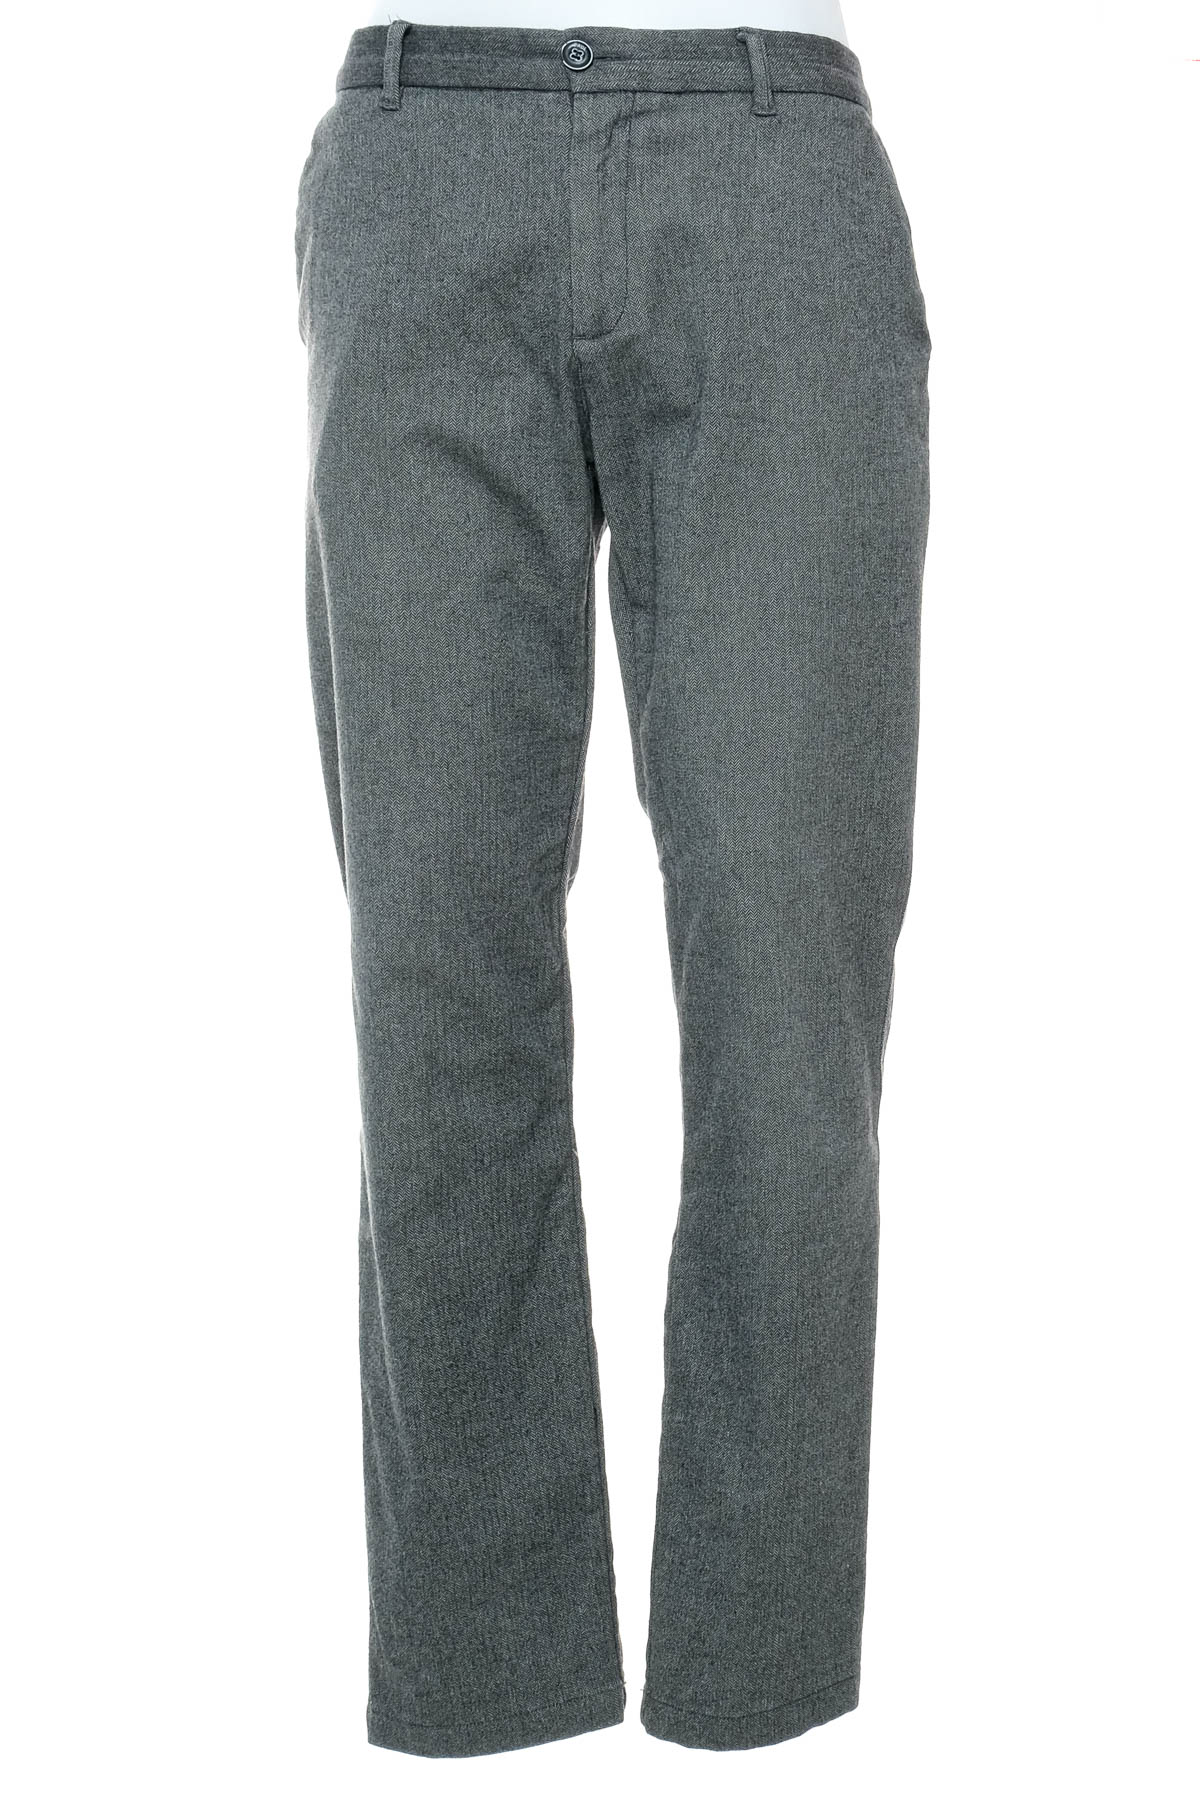 Pantalon pentru bărbați - Paul - 0